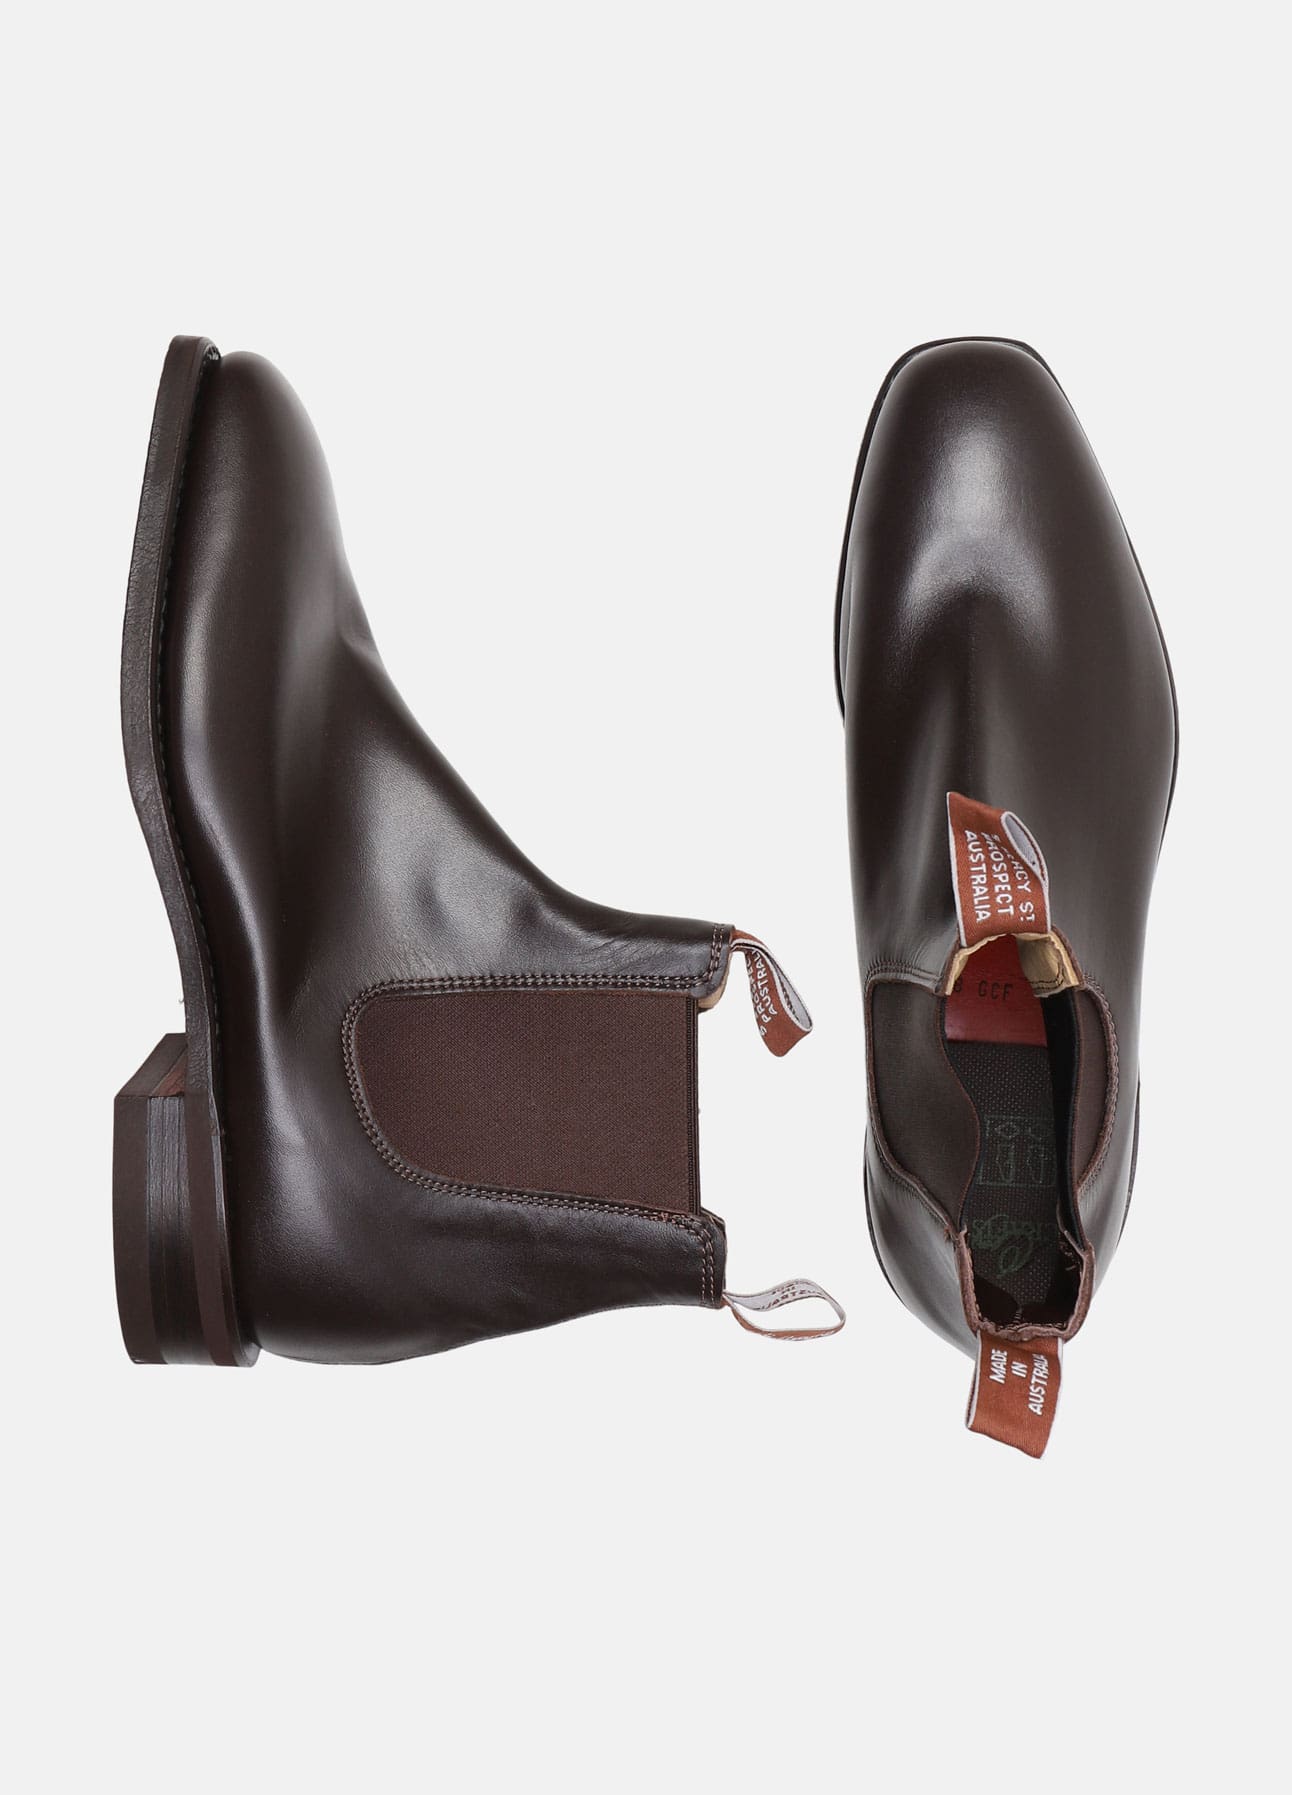 Wentworth støvler fra R.M. | online hos troelstrup.com